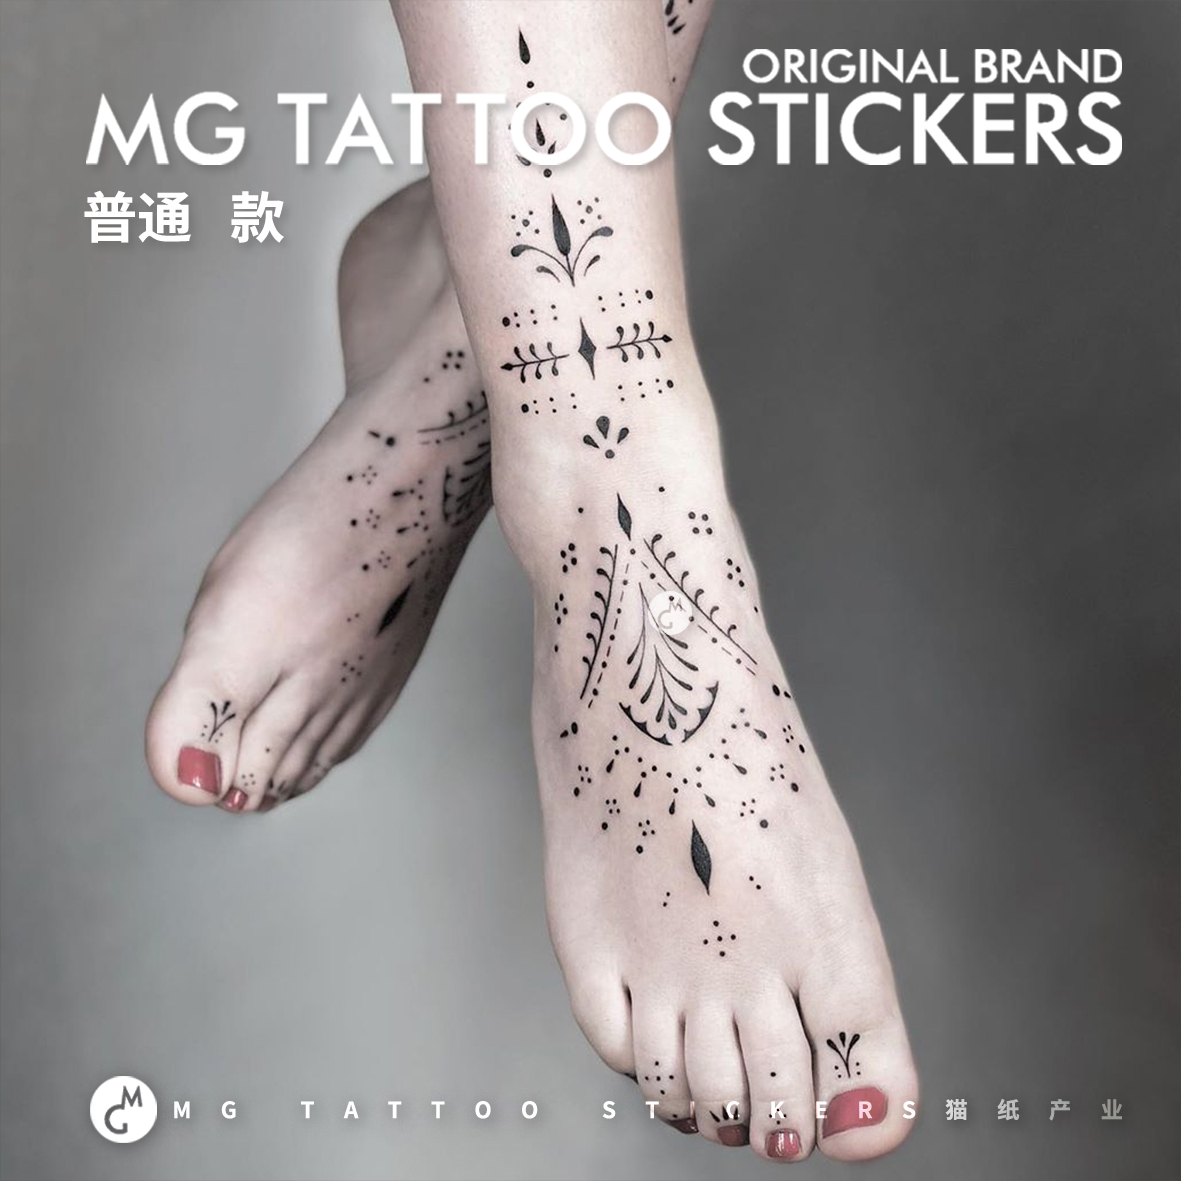 MG tattoo 艺术图腾 部落纹身 夏威夷少女沙滩旅拍小众纹身贴纸